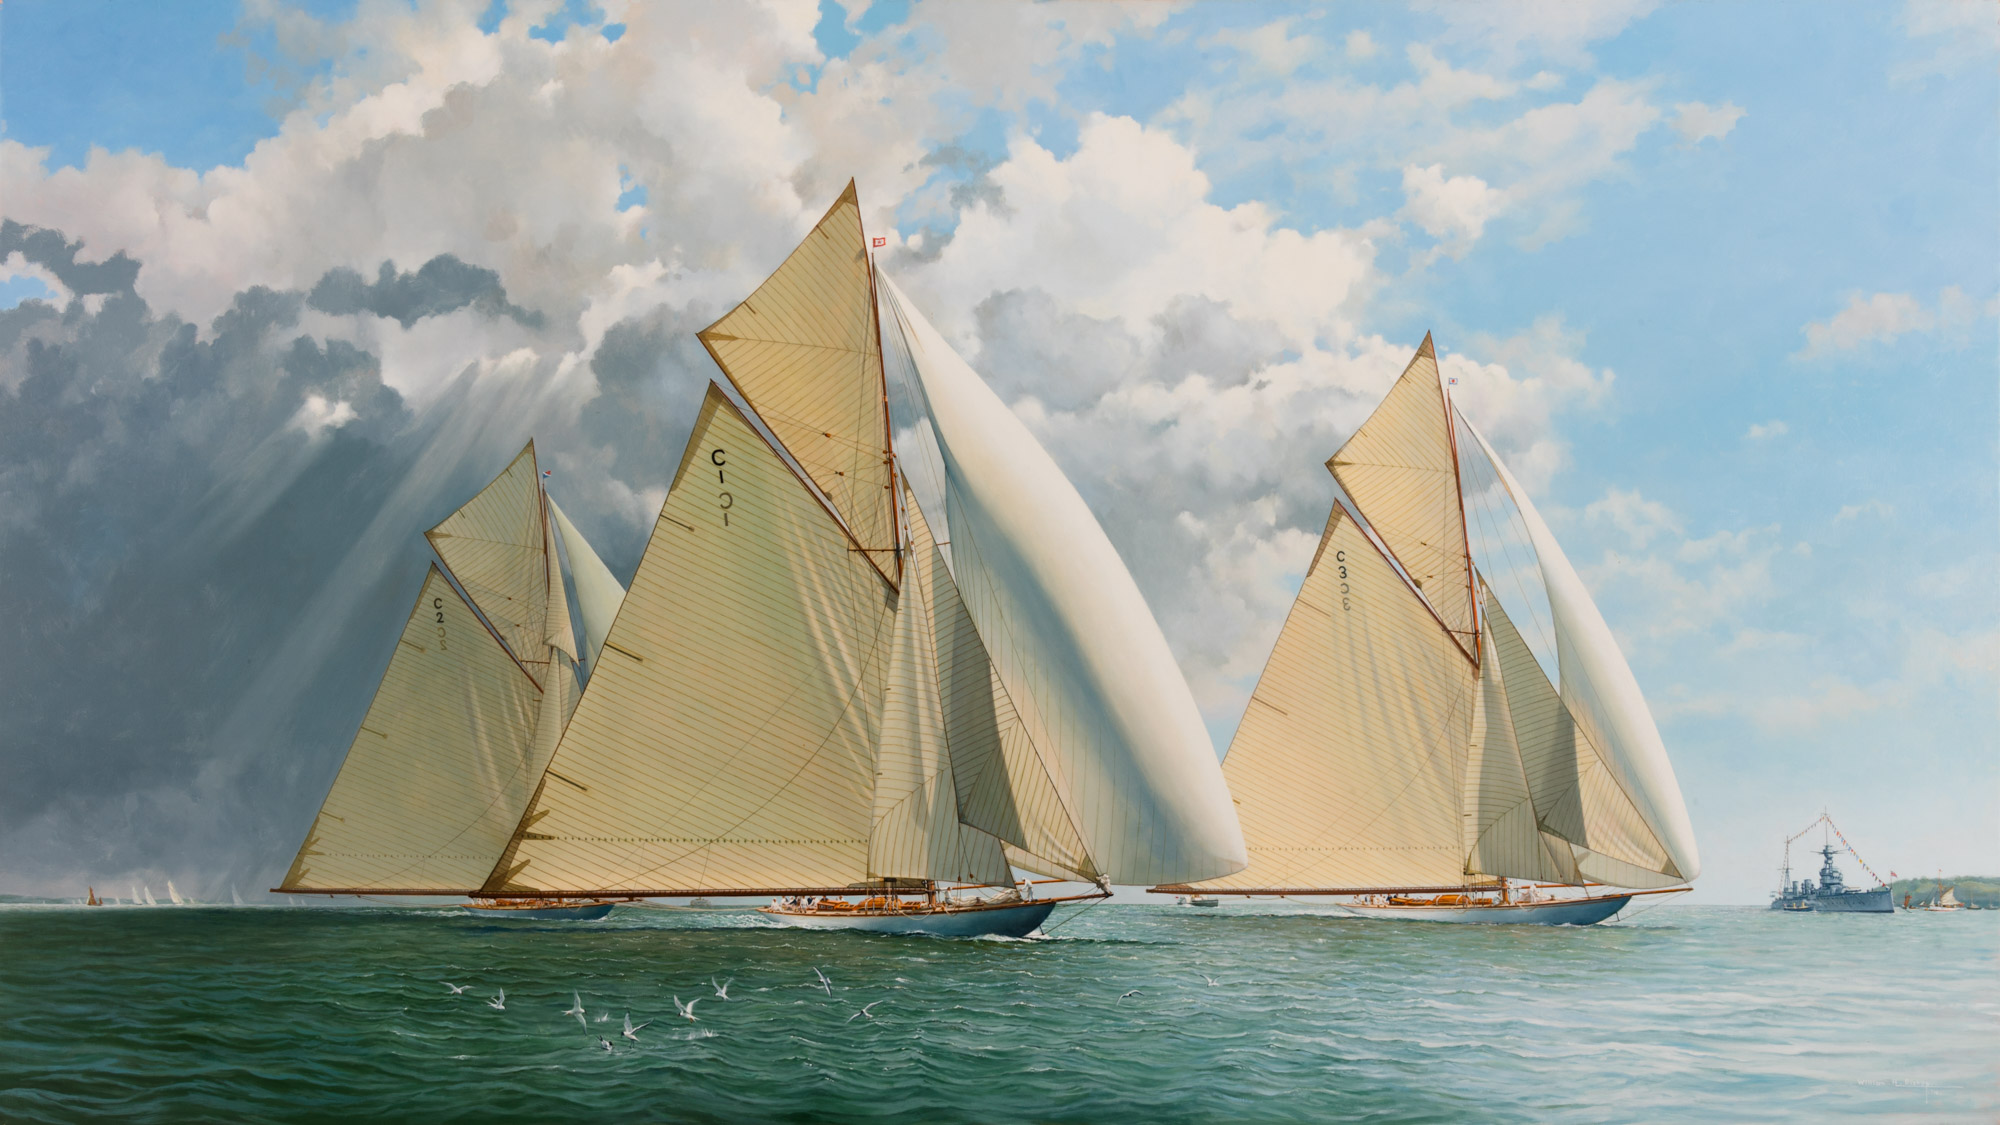 19 Metre Yachts racing in the Solent c1912